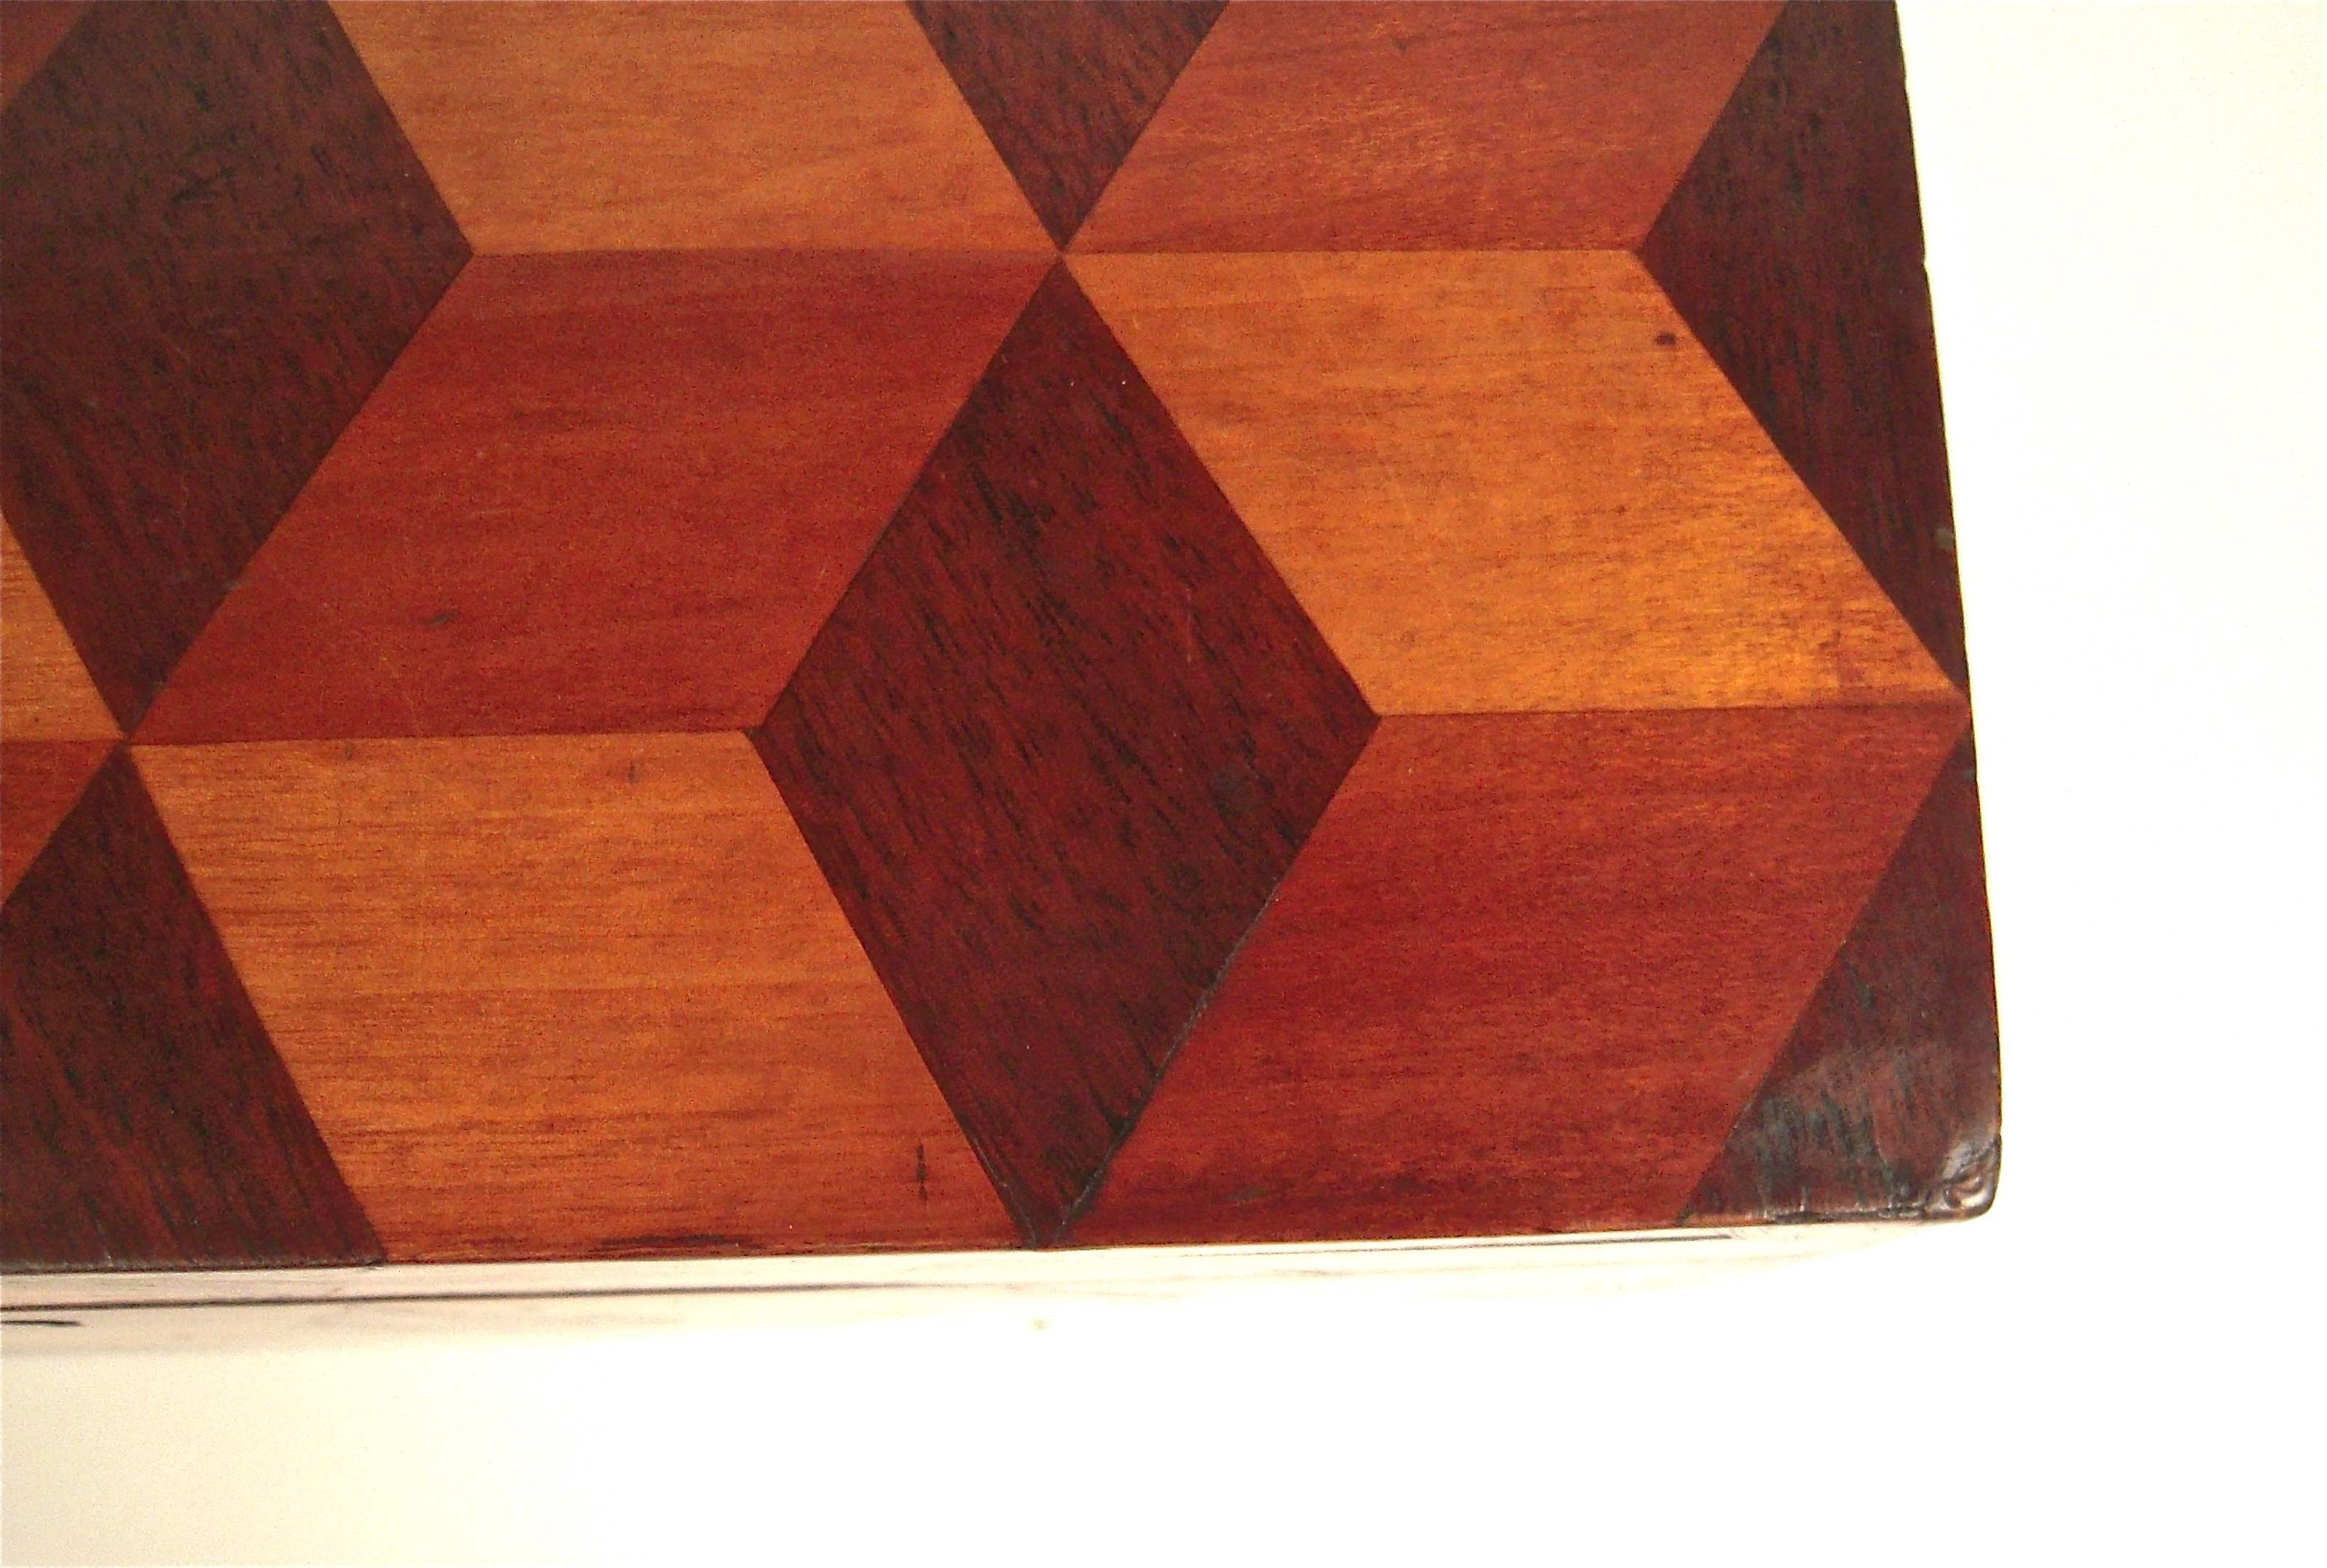 Mahogany Graphic 19th Century Inlaid Wood Box